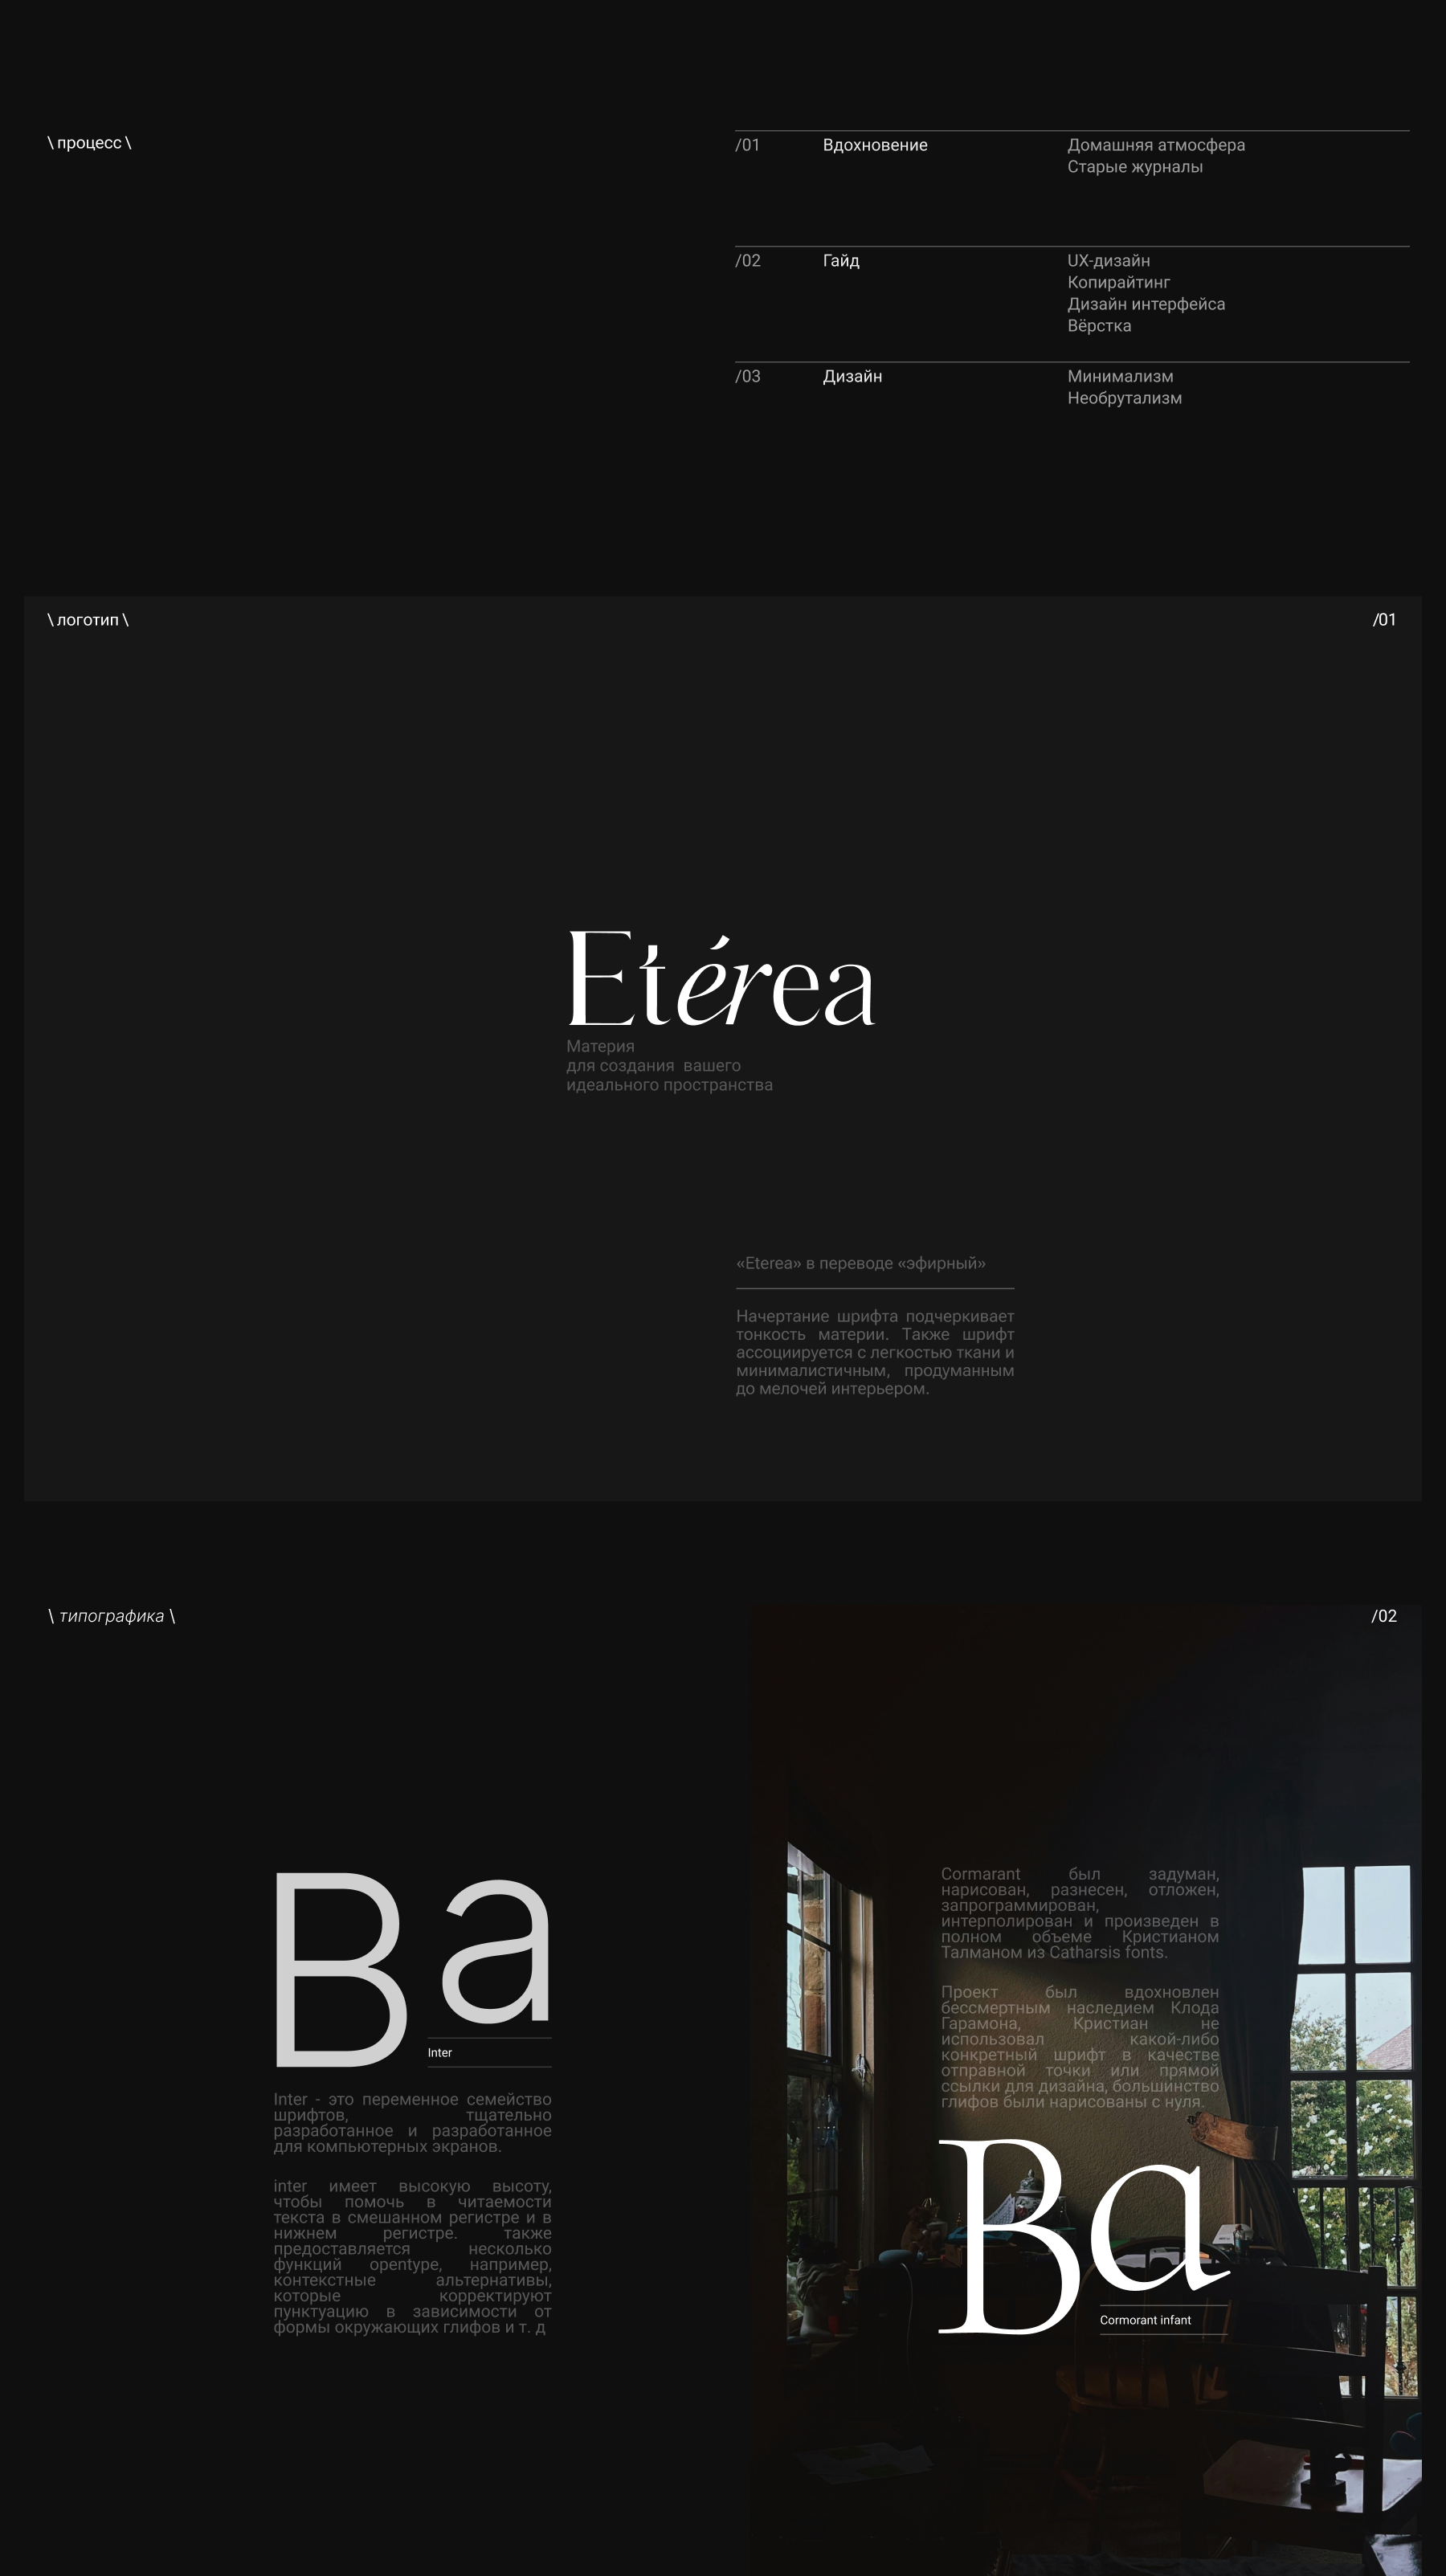 Eterea. Текстильный дизайн интерьера — Изображение №2 — Интерфейсы, Анимация на Dprofile